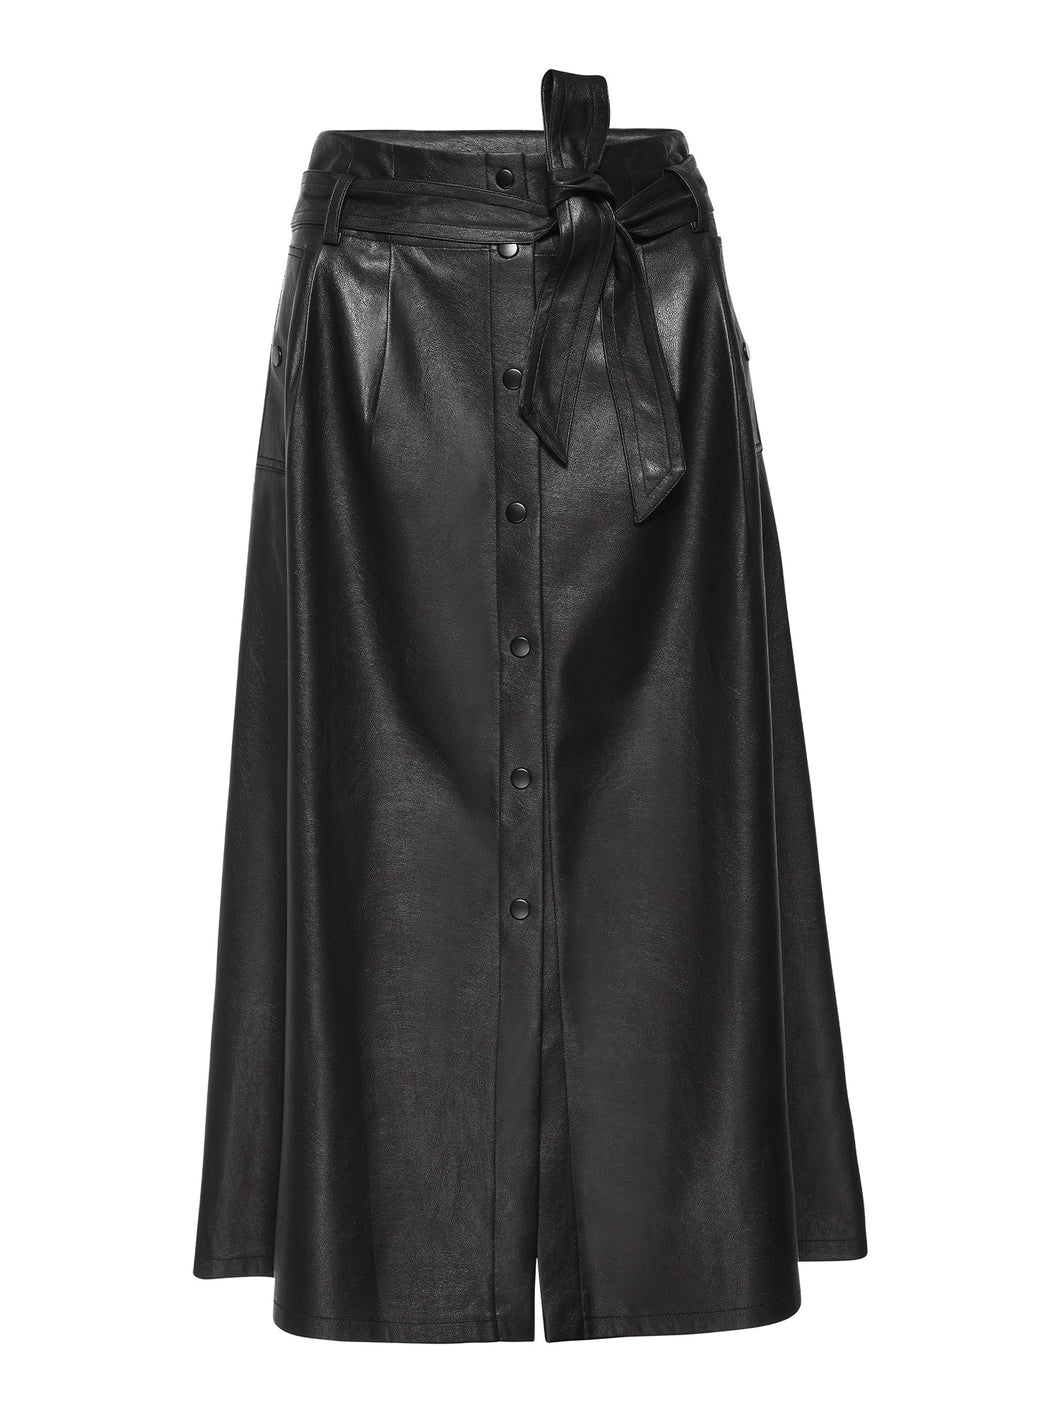 Teagan Vegan Leather Skirt (Best-Seller Restocked!)